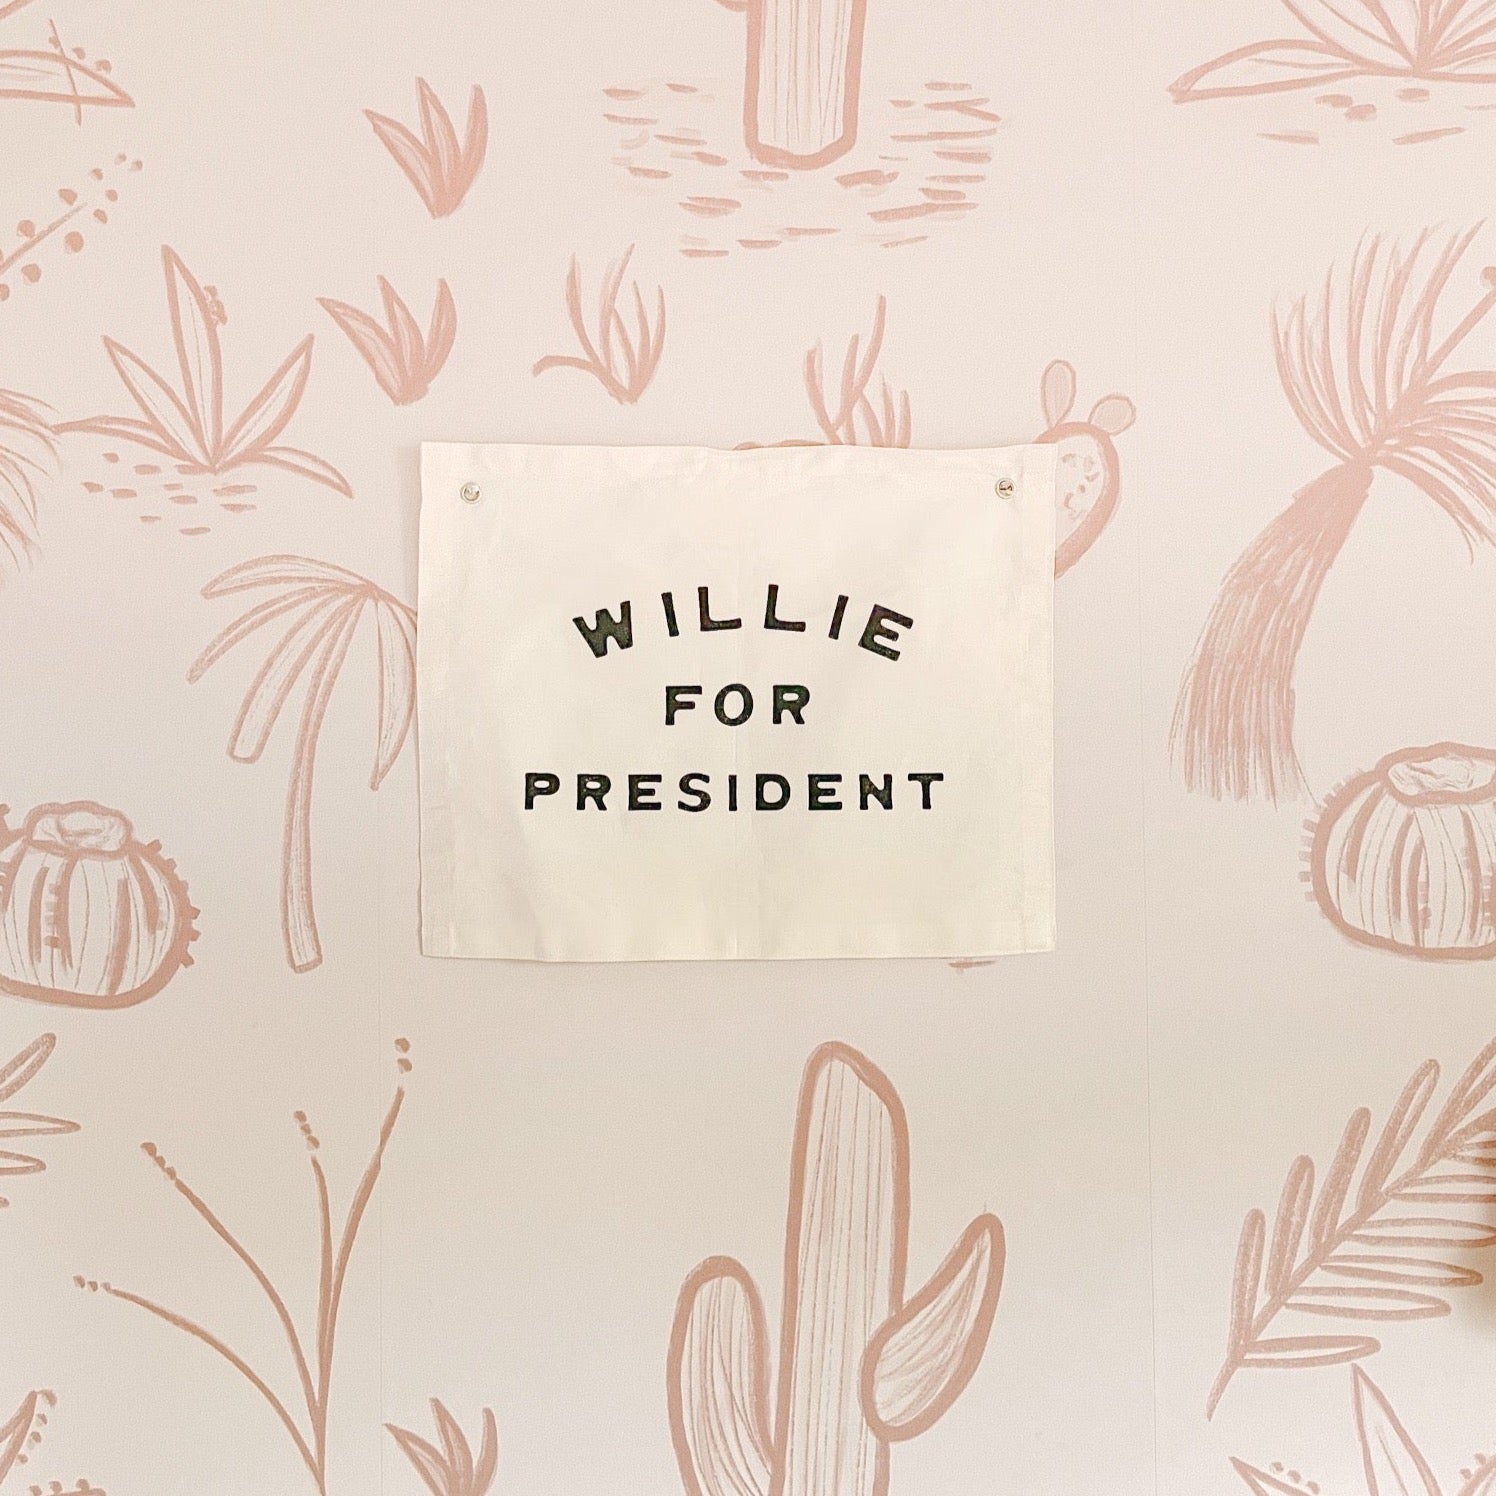 willie for president banner